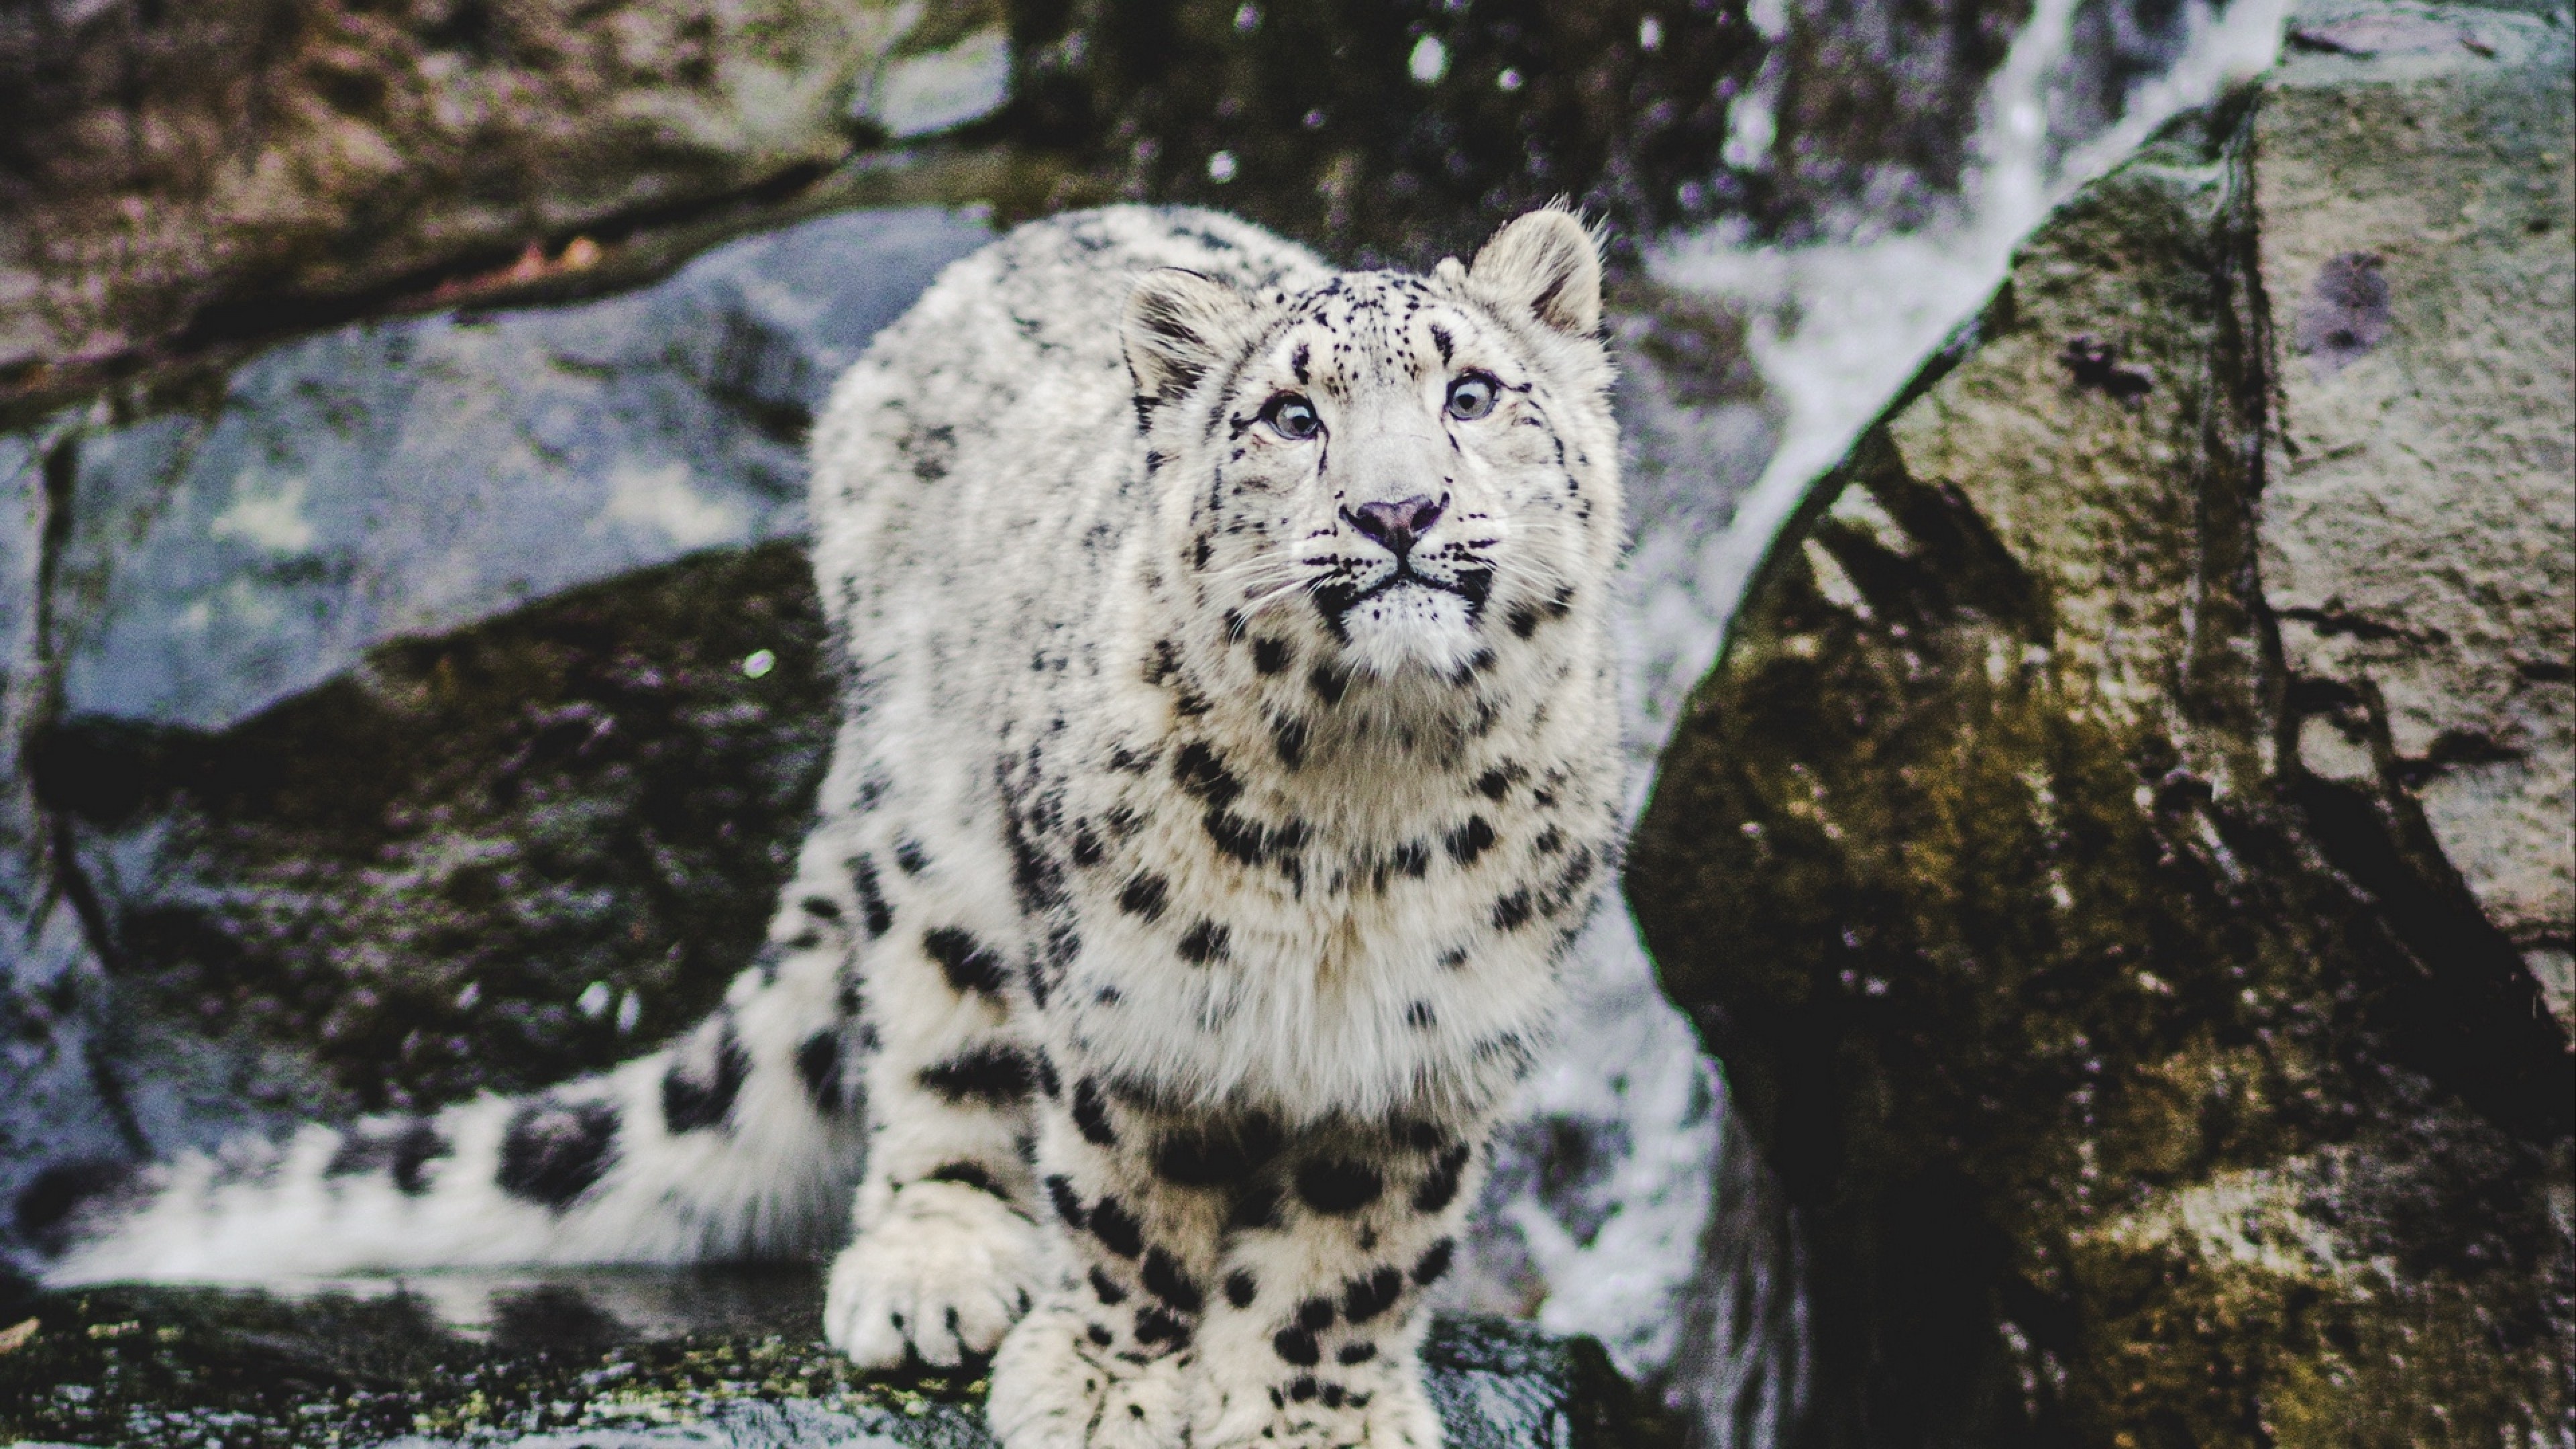 Snow leopard smiling hd, Ultra hd wallpaper, Net, 3840x2160 4K Desktop